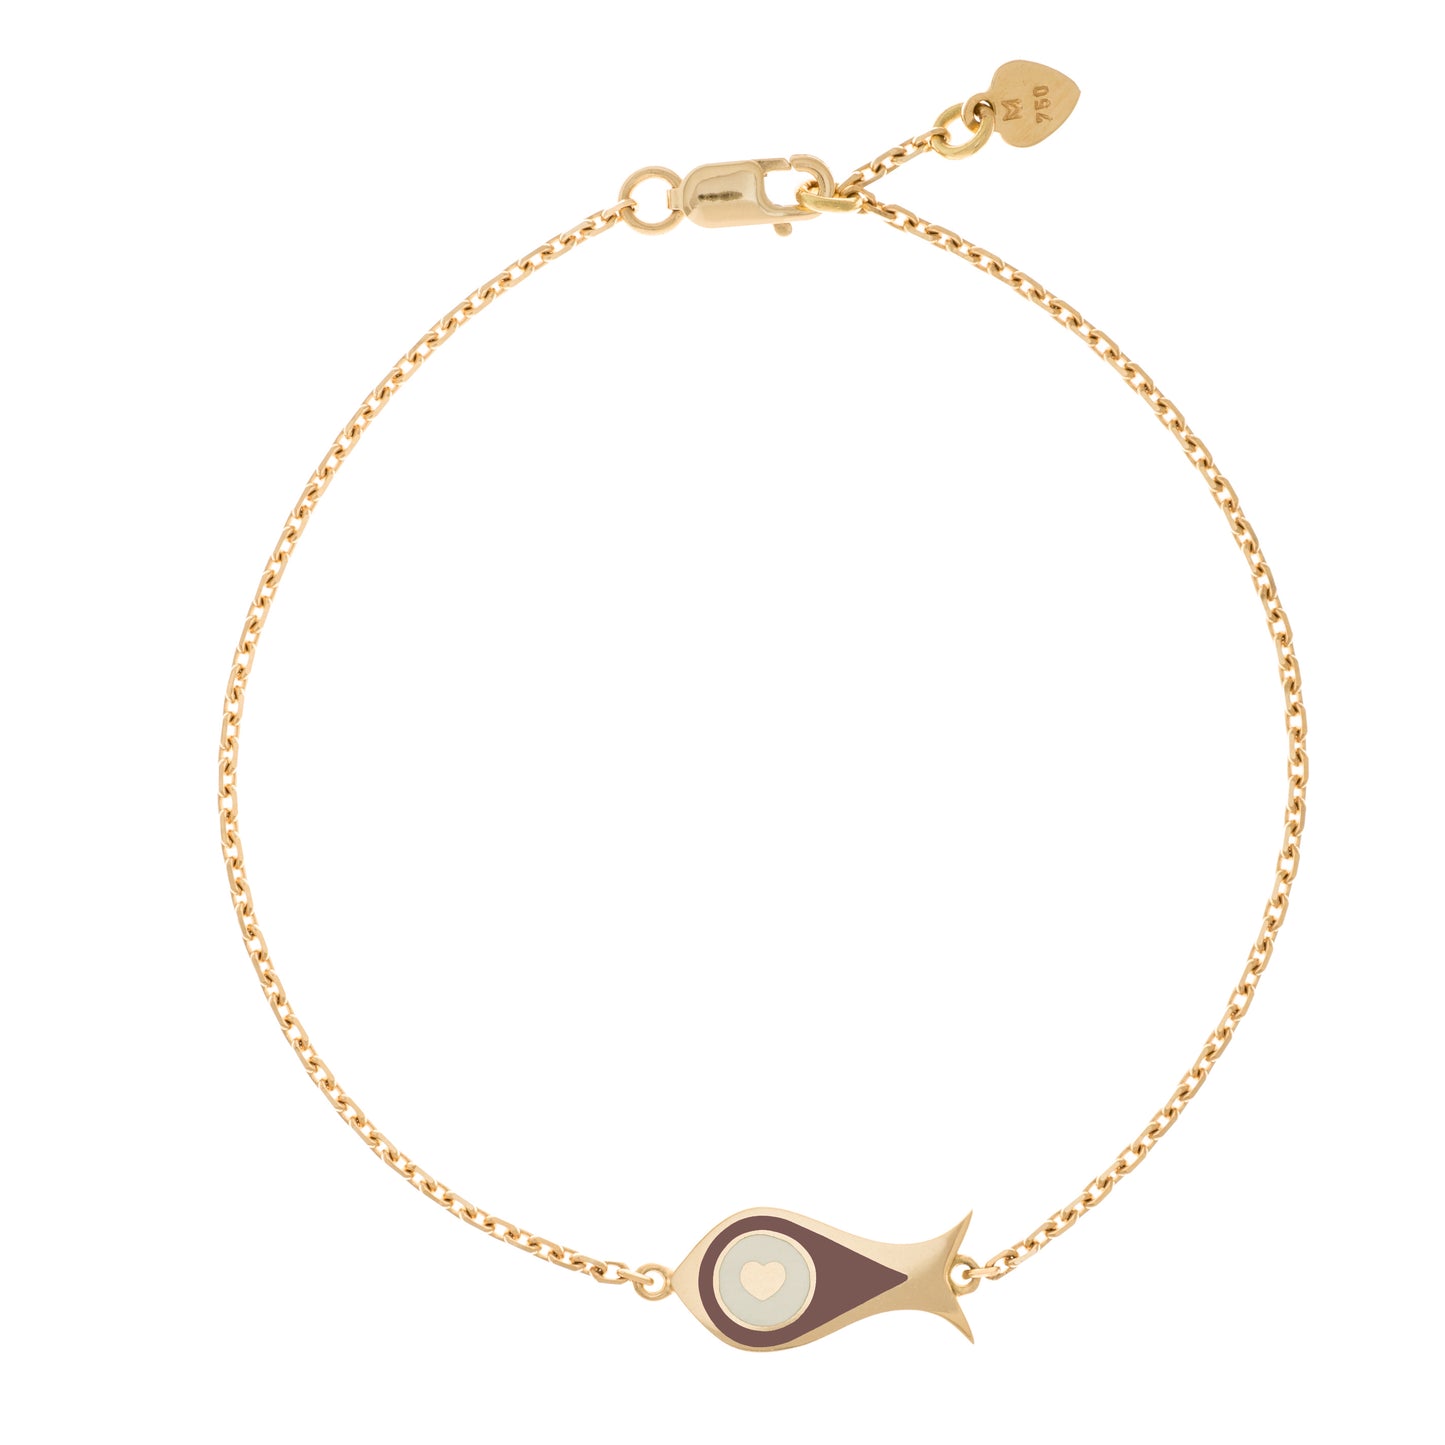 MORA bijoux, bracelet Poisson-coeur lchthys émaillé marron d'un diamètre de 15mm en or jaune 18 carats. Longueur de la chaîne 16cm avec un petit coeur en or jaune 18 carats soudé sur le fermoir.